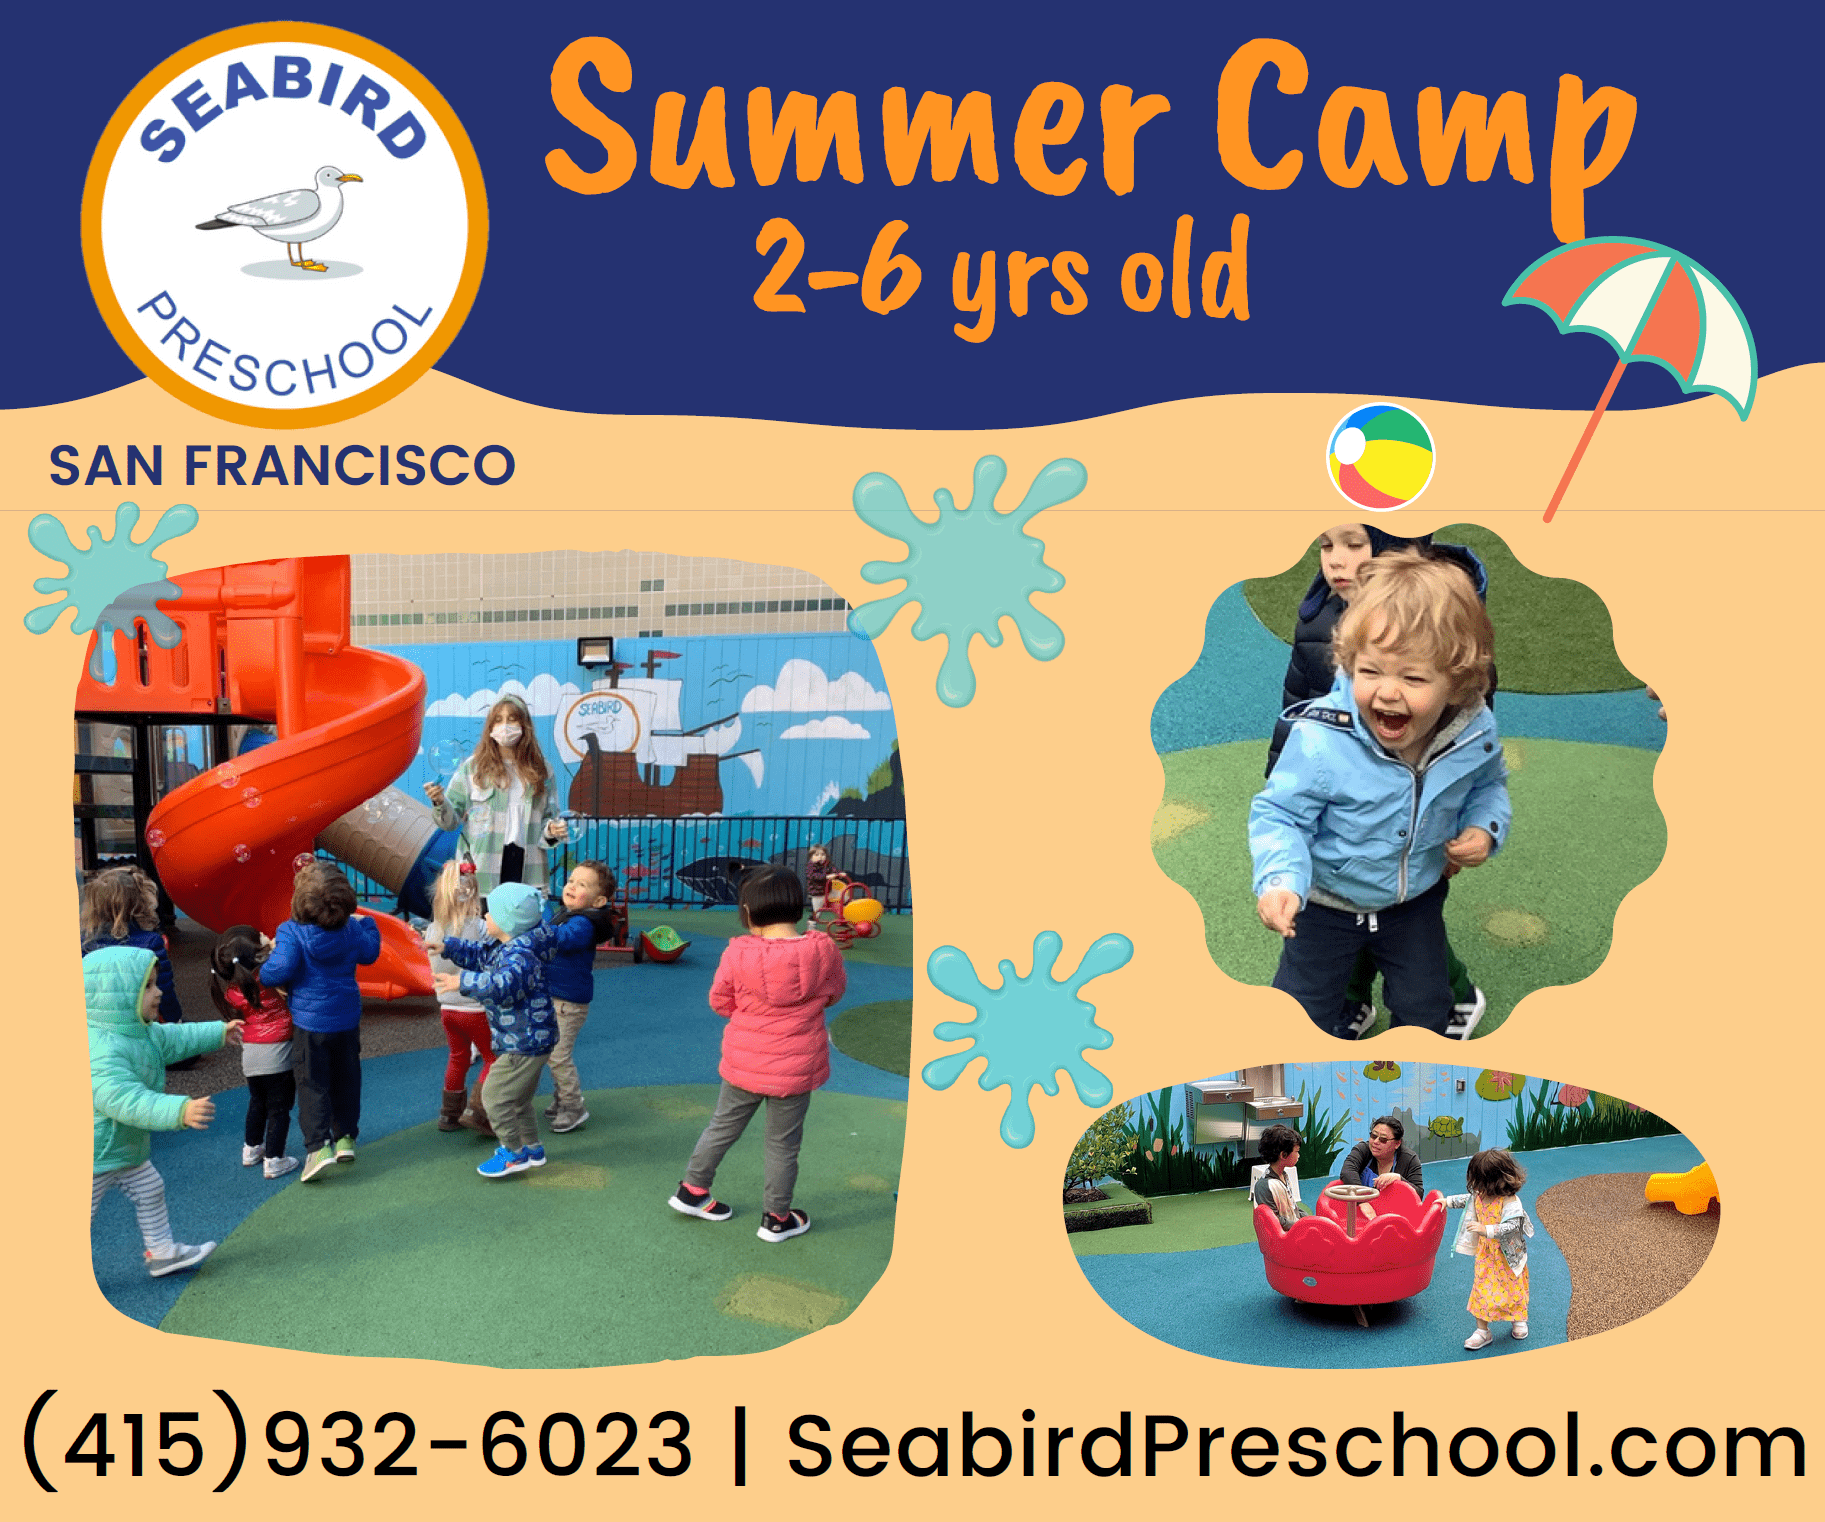 Check out Seabird Preschool  Summer Camp!